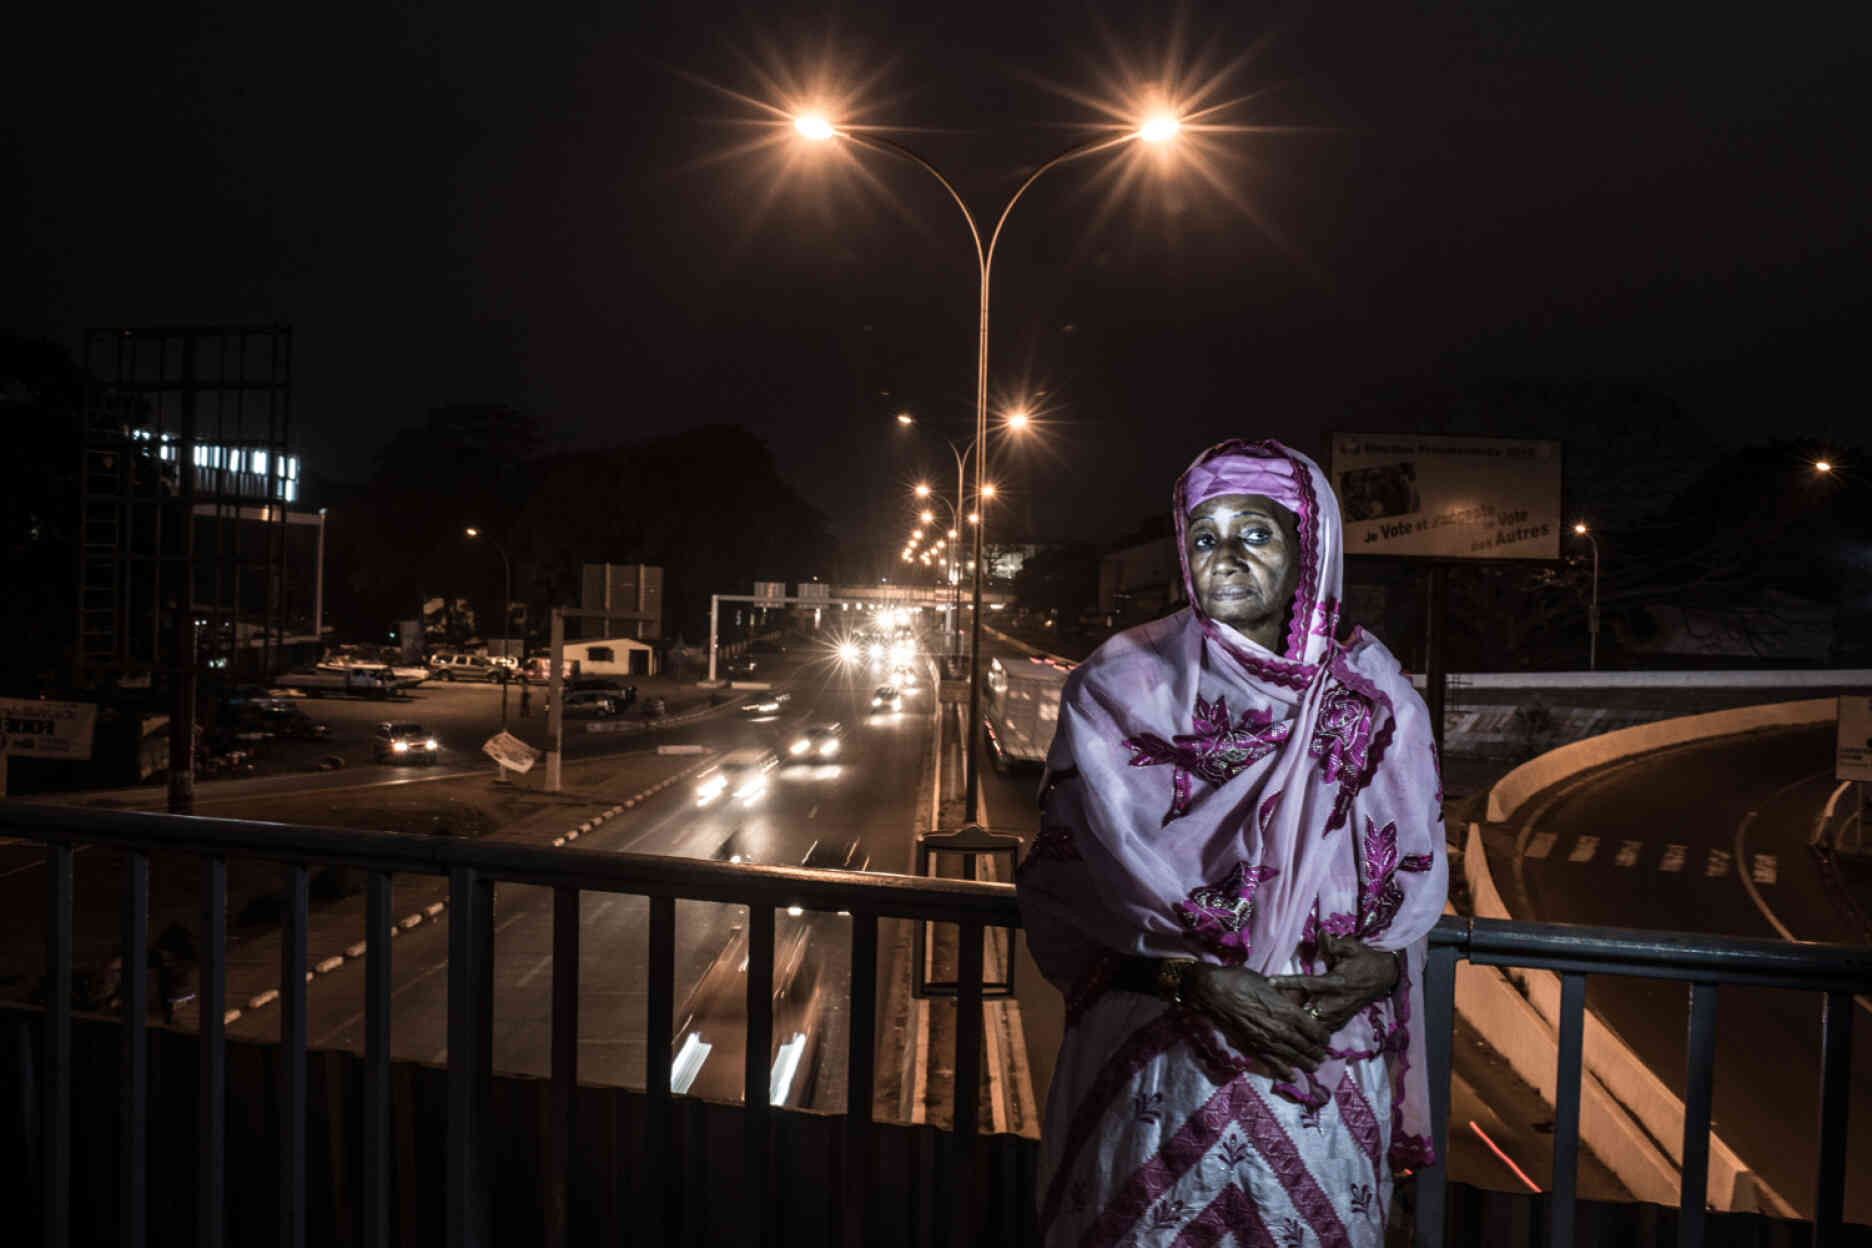 Hadja Rabi Diallo, photographiée sur le pont auquel son mari a été pendu sur les ordres du président Sékou Touré en 1971. « Mon mari s’appelait Ousmane Baldé, il était le ministre des finances. Sékou Touré l’a accusé de vouloir prendre le pouvoir. Un jour, des militaires sont venus chez nous et ont annoncé qu’il avait été arrêté. Ensuite, un de nos quatre enfants a entendu à l’école qu’il avait été pendu depuis le pont. Quand nous avons entendu la nouvelle, nous nous sommes mis à pleurer. Ils nous ont mis à la porte de notre maison et ont volé tout ce qu’ils ont trouvé. »